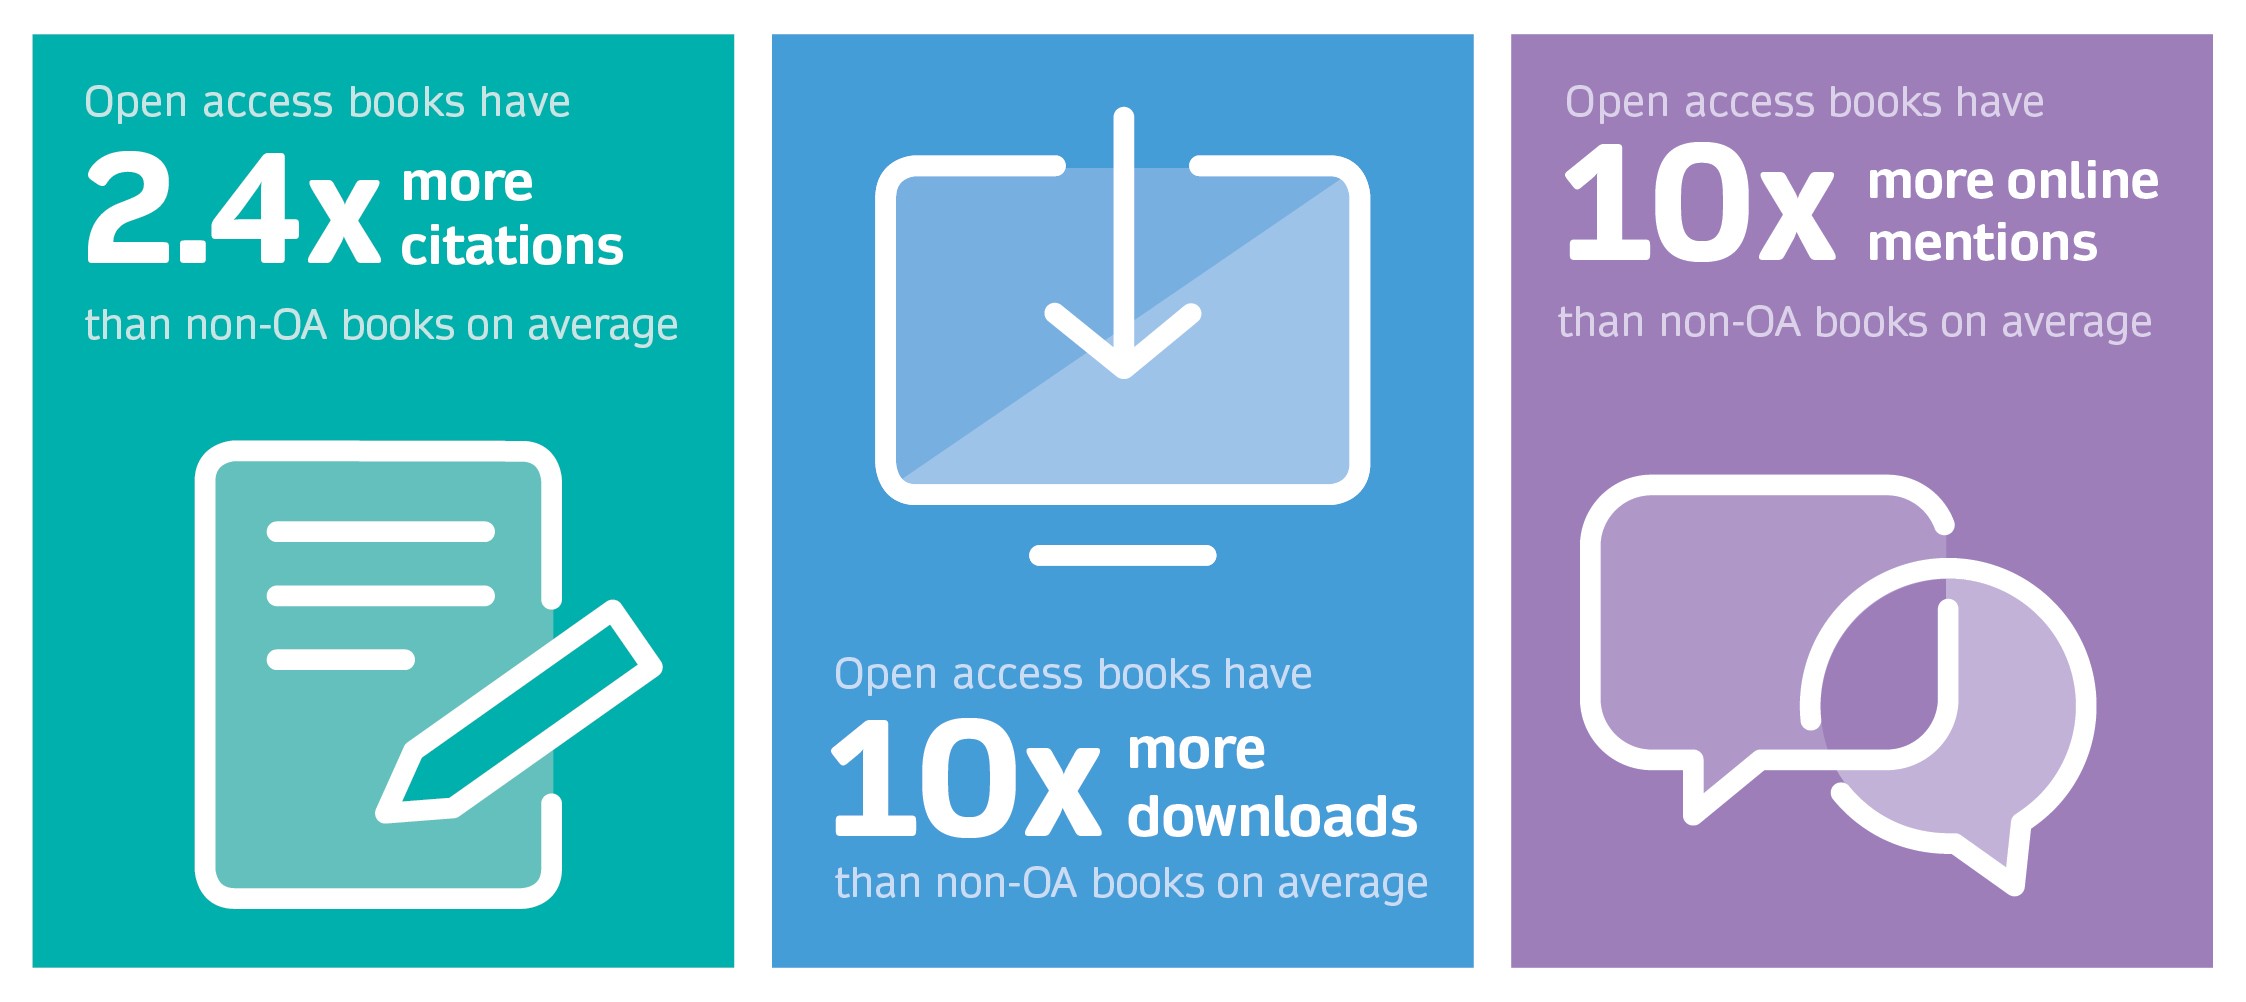 Open access books advantage